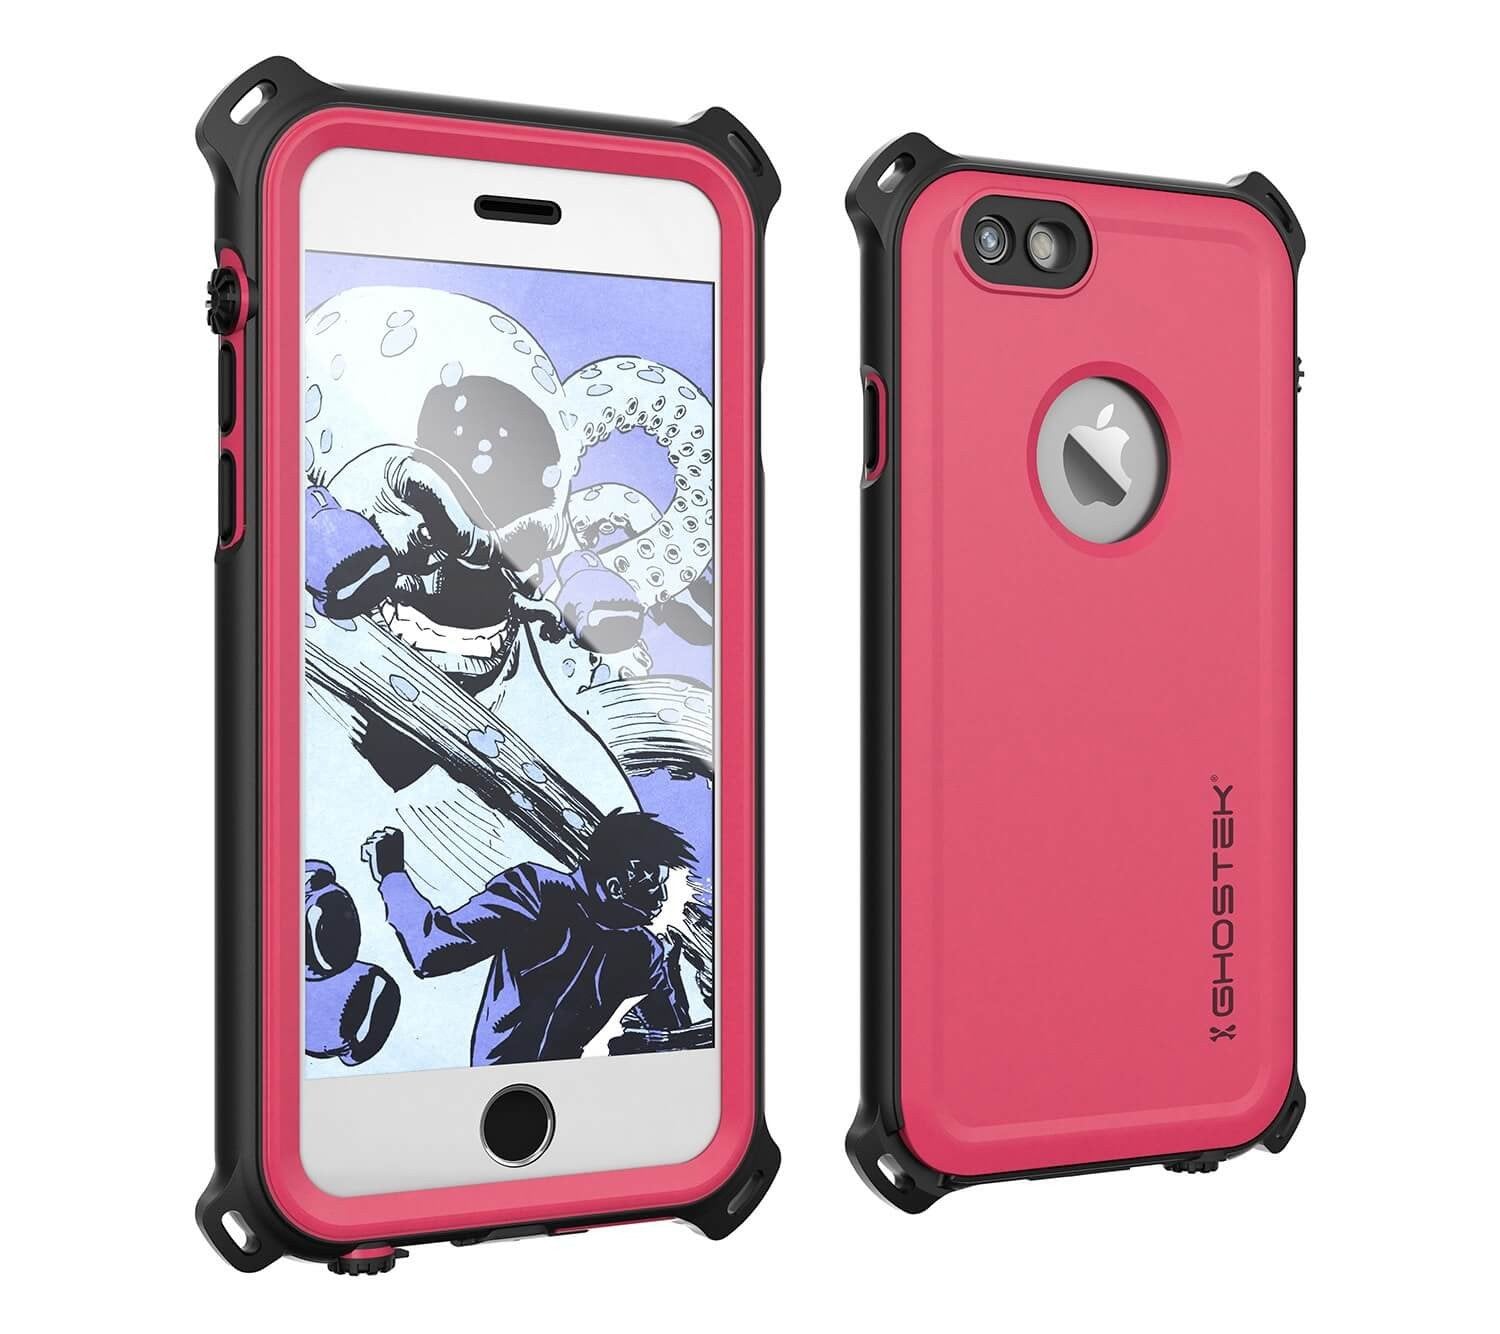 iPhone 6S/6 Waterproof Case, Ghostek® Nautical Pink Series| Underwater | Aluminum Frame | Ultra Fit